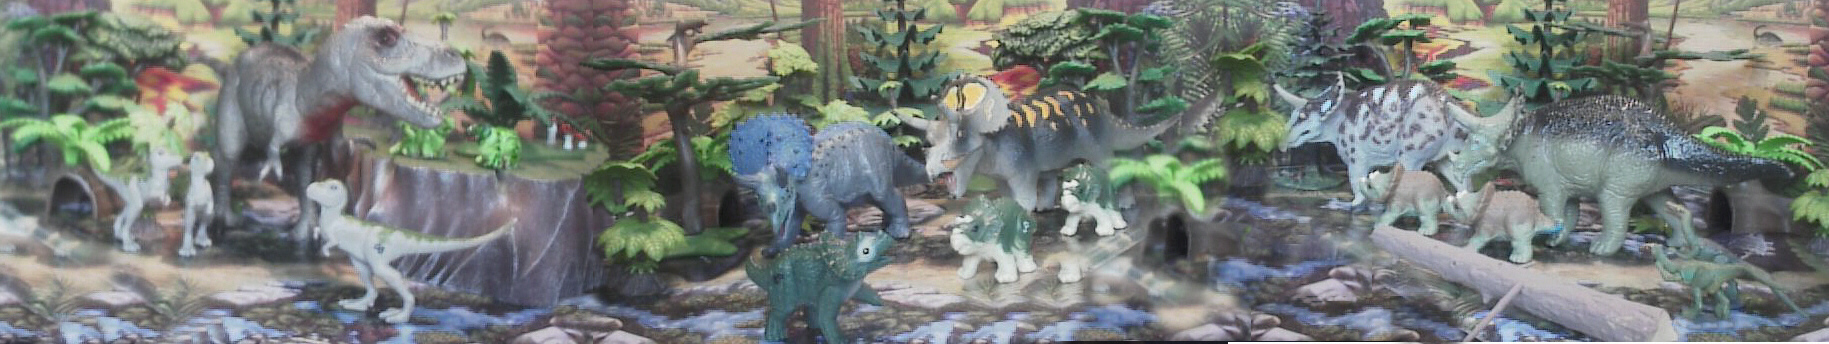 From Right to left Kaiydo Tyrannosaurus, Toyway Ankylosaurus, Kaiyodo Triceratops, Schleich Edmontosaurus, Toyway Leaellynasaura, Tamiya Hypsilophodon, Two different Tamiya Triceratops.